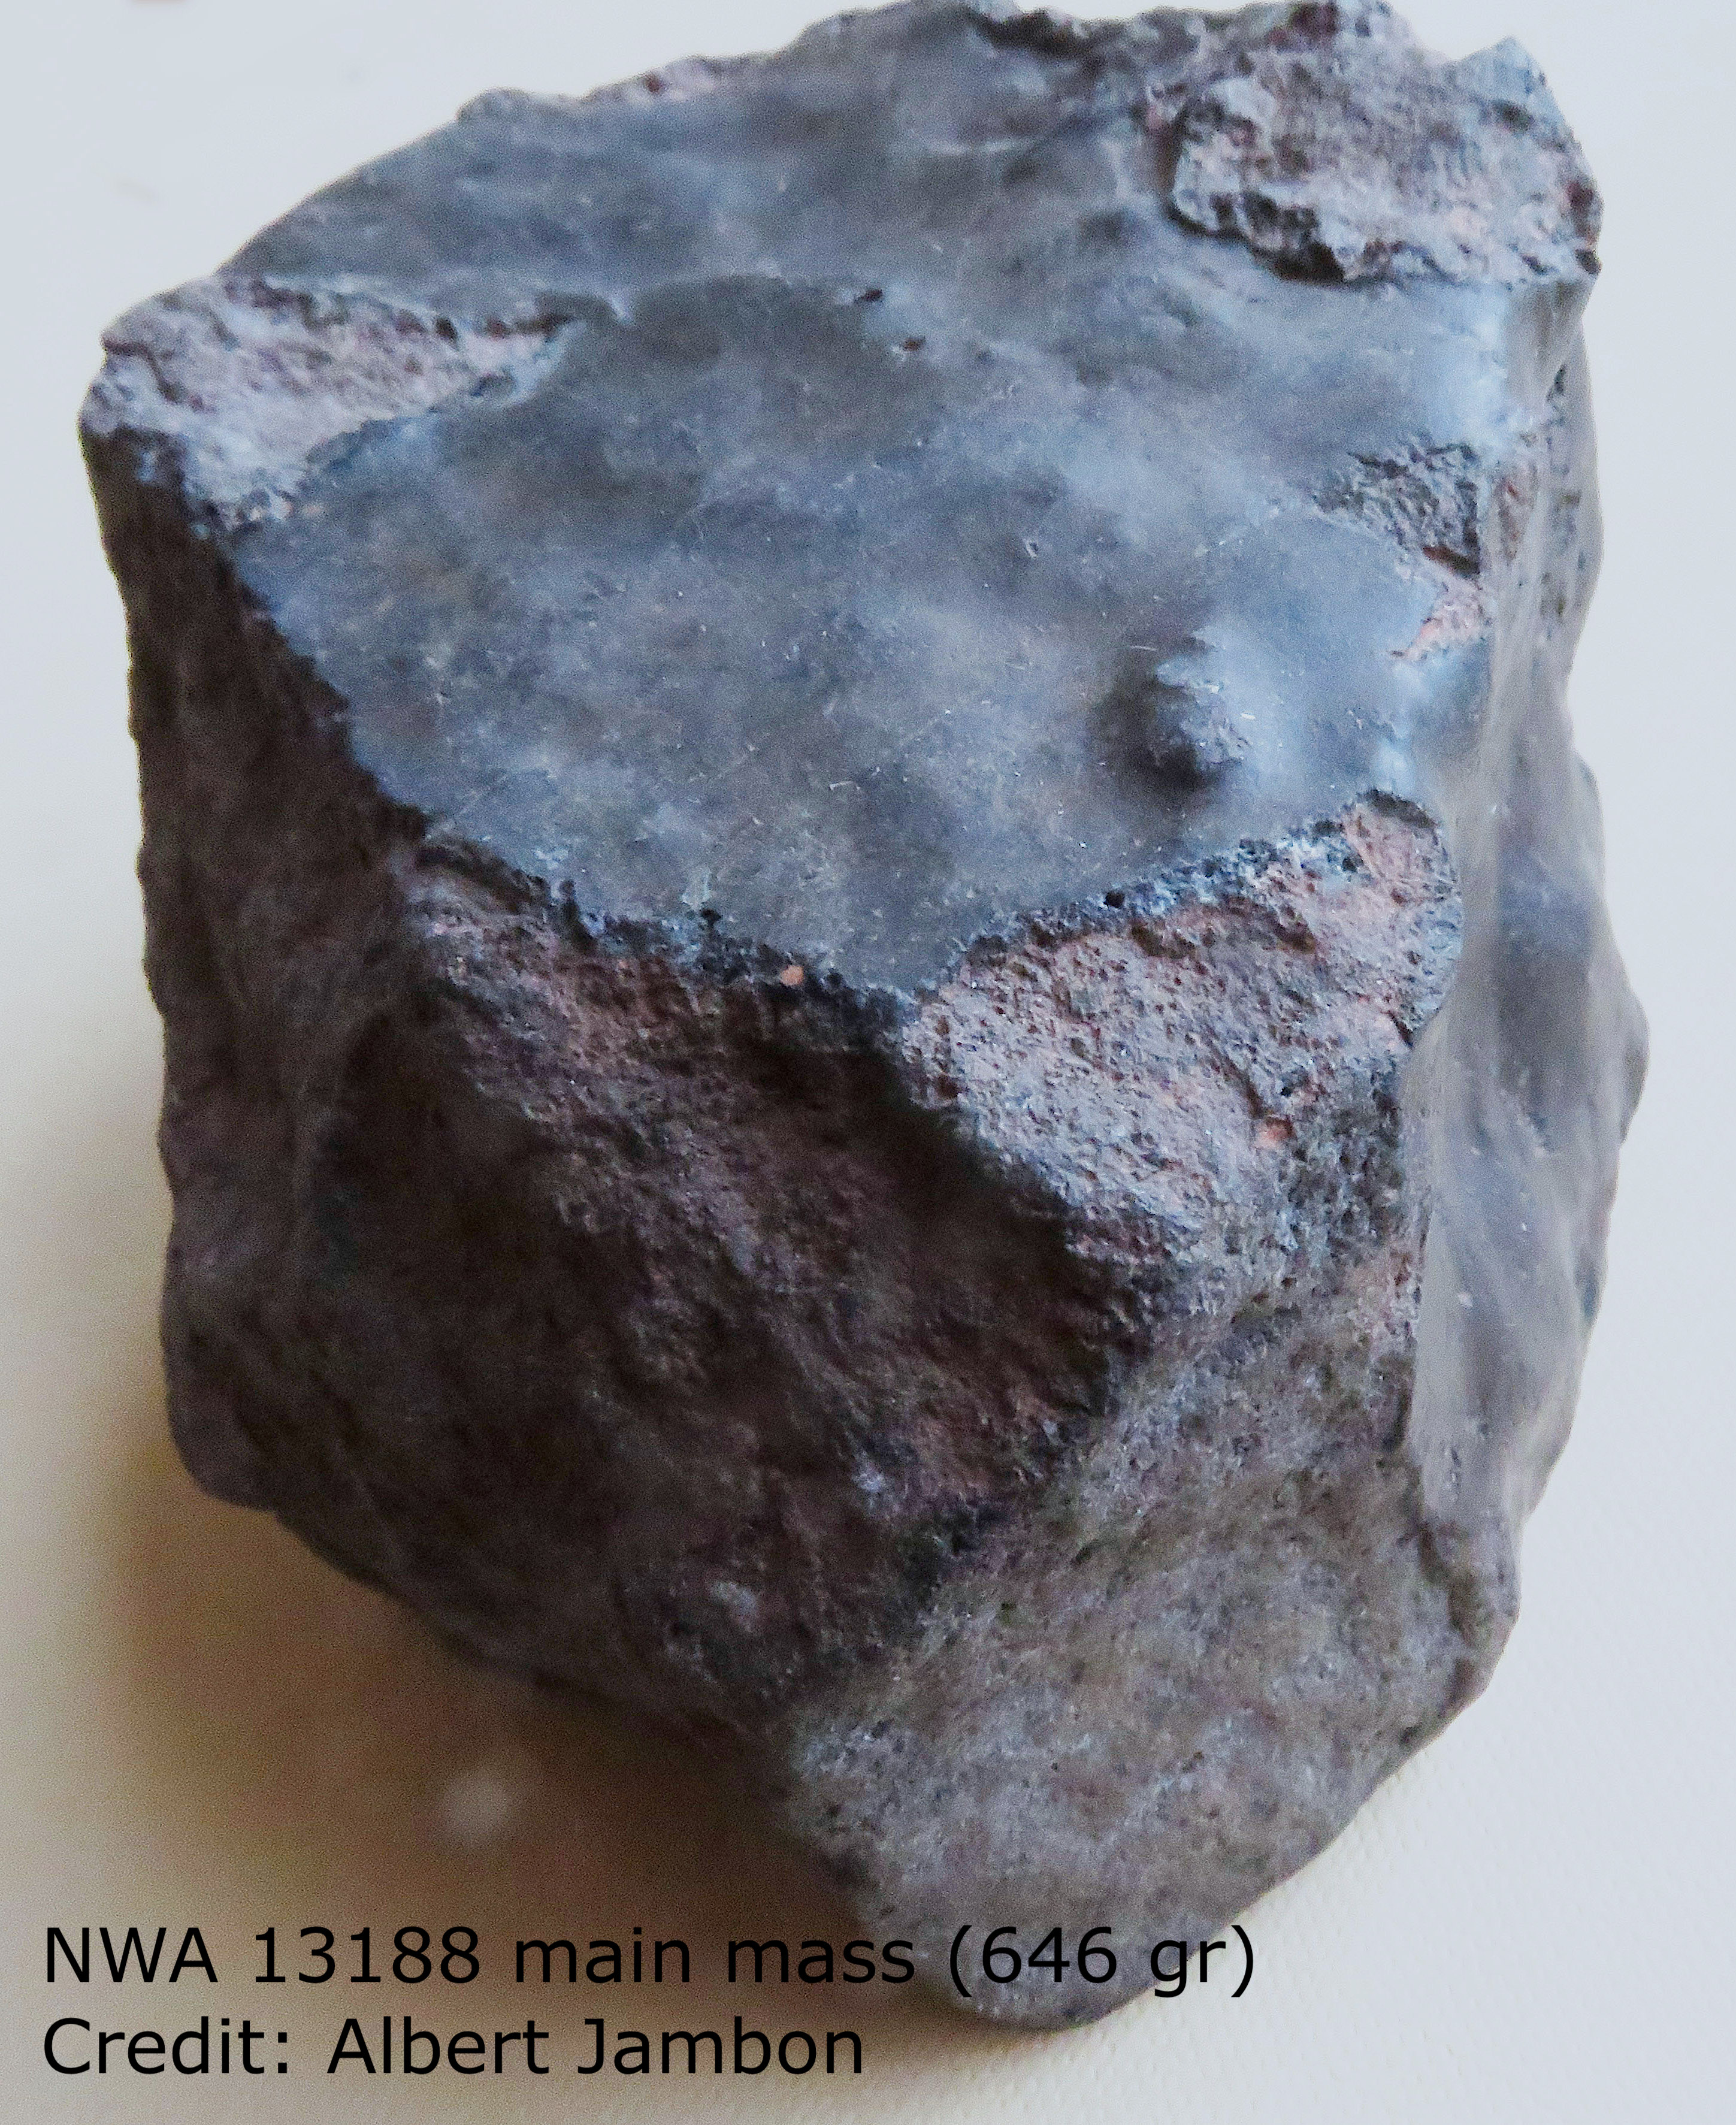 Celotna slika vesoljske skale je prikazana v glavi.